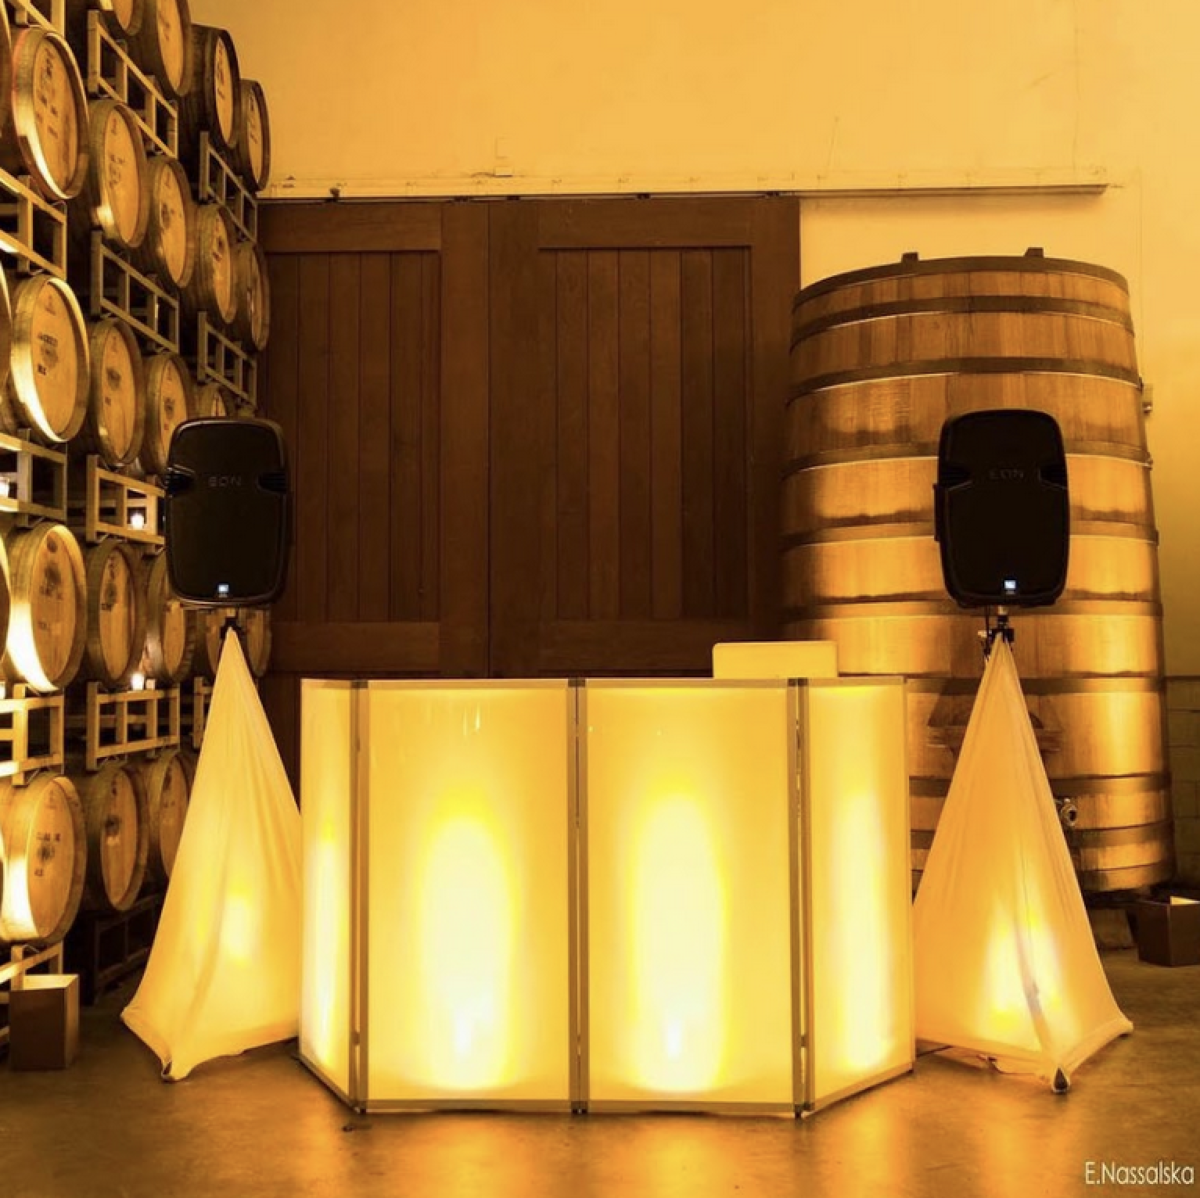 DJ booth indoor lighting in winery